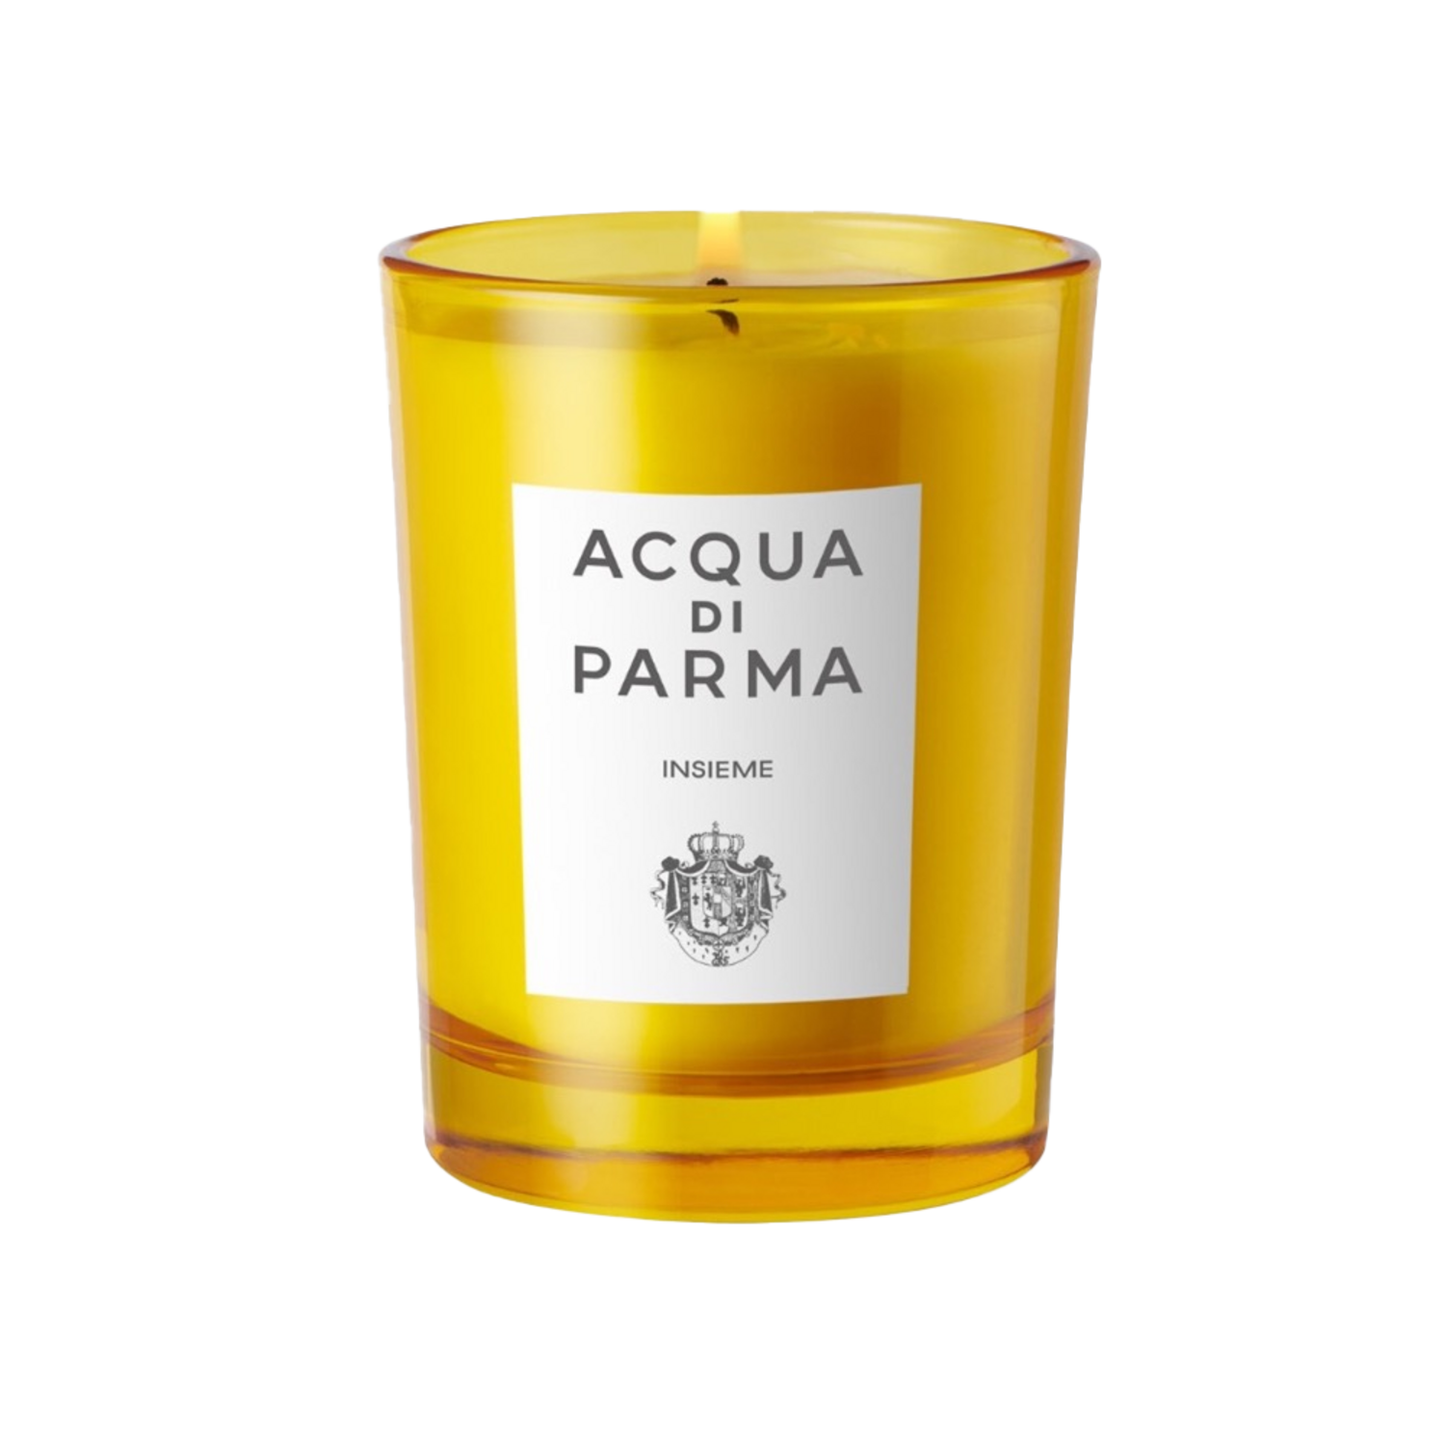 Acqua Di Parma Insieme Candle